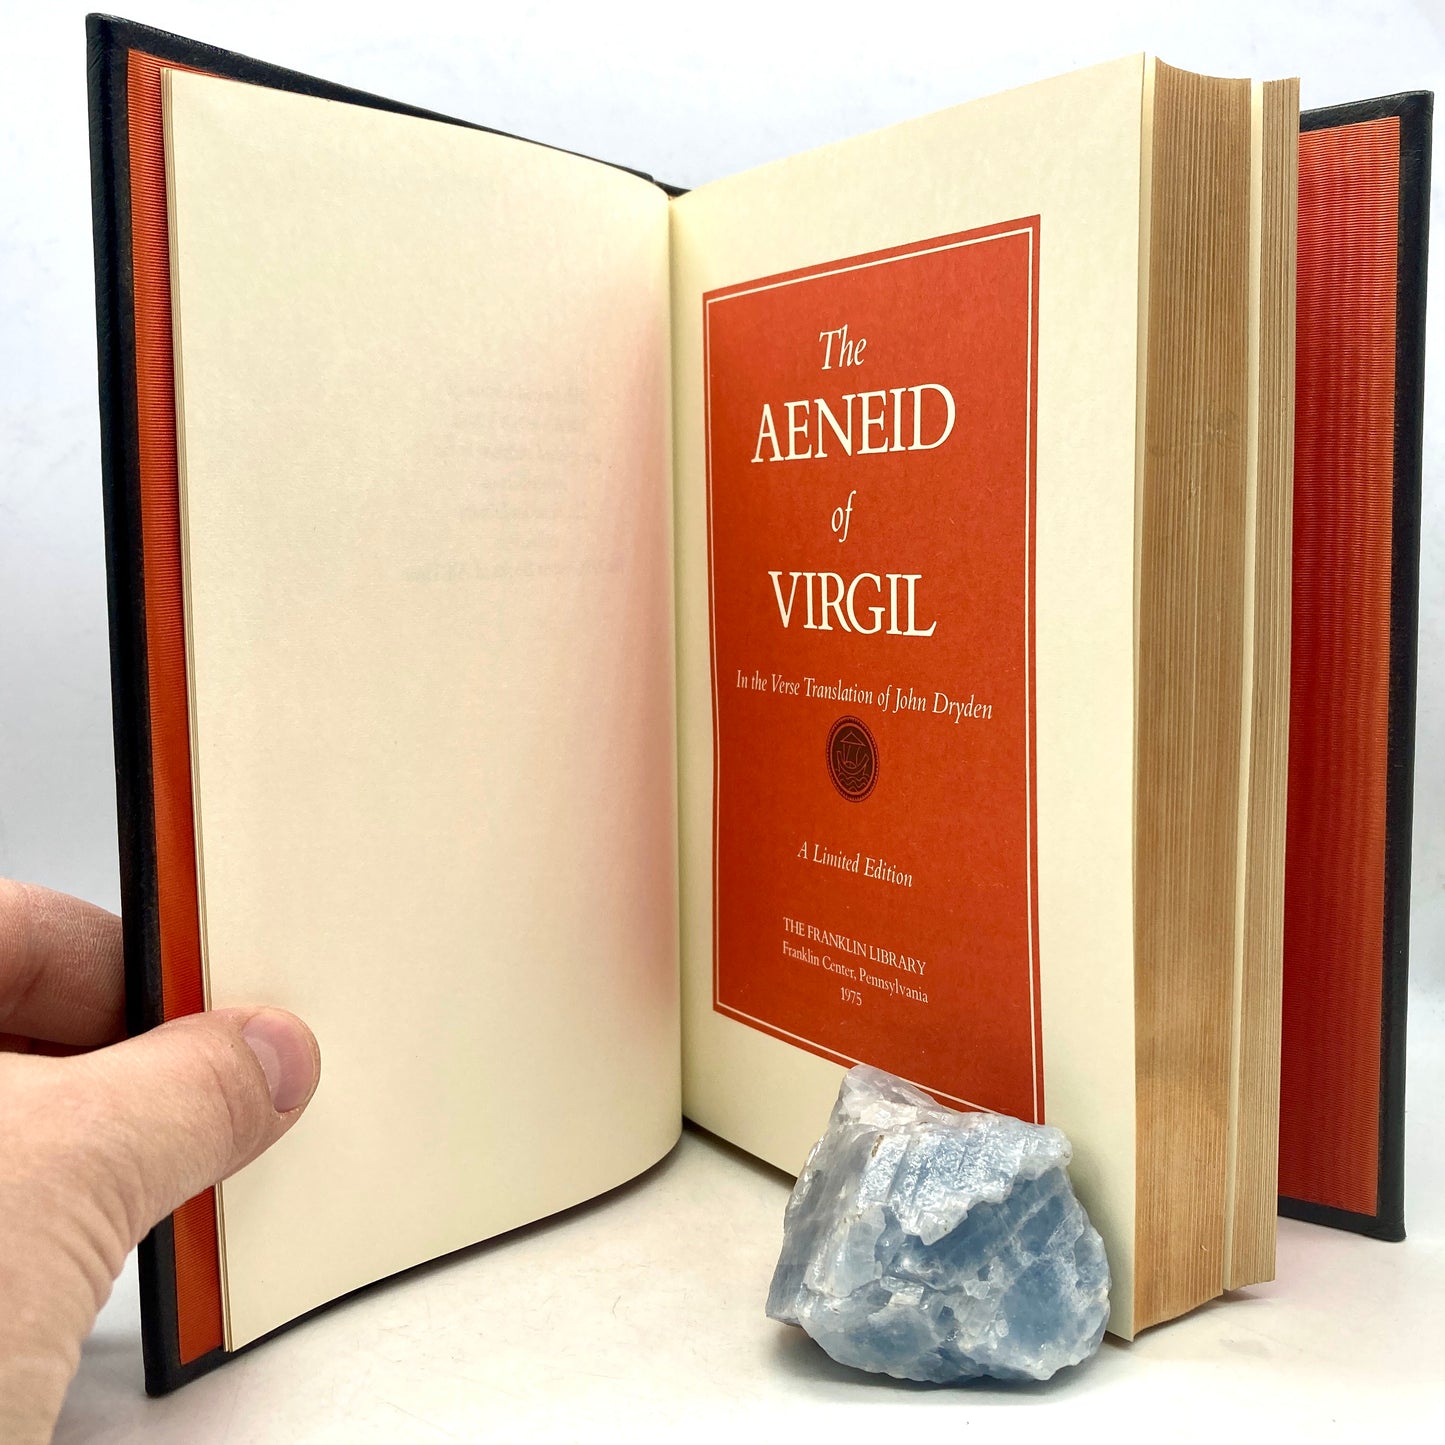 DRYDEN, John "The Aeneid of Virgil" [Franklin Library, 1975]